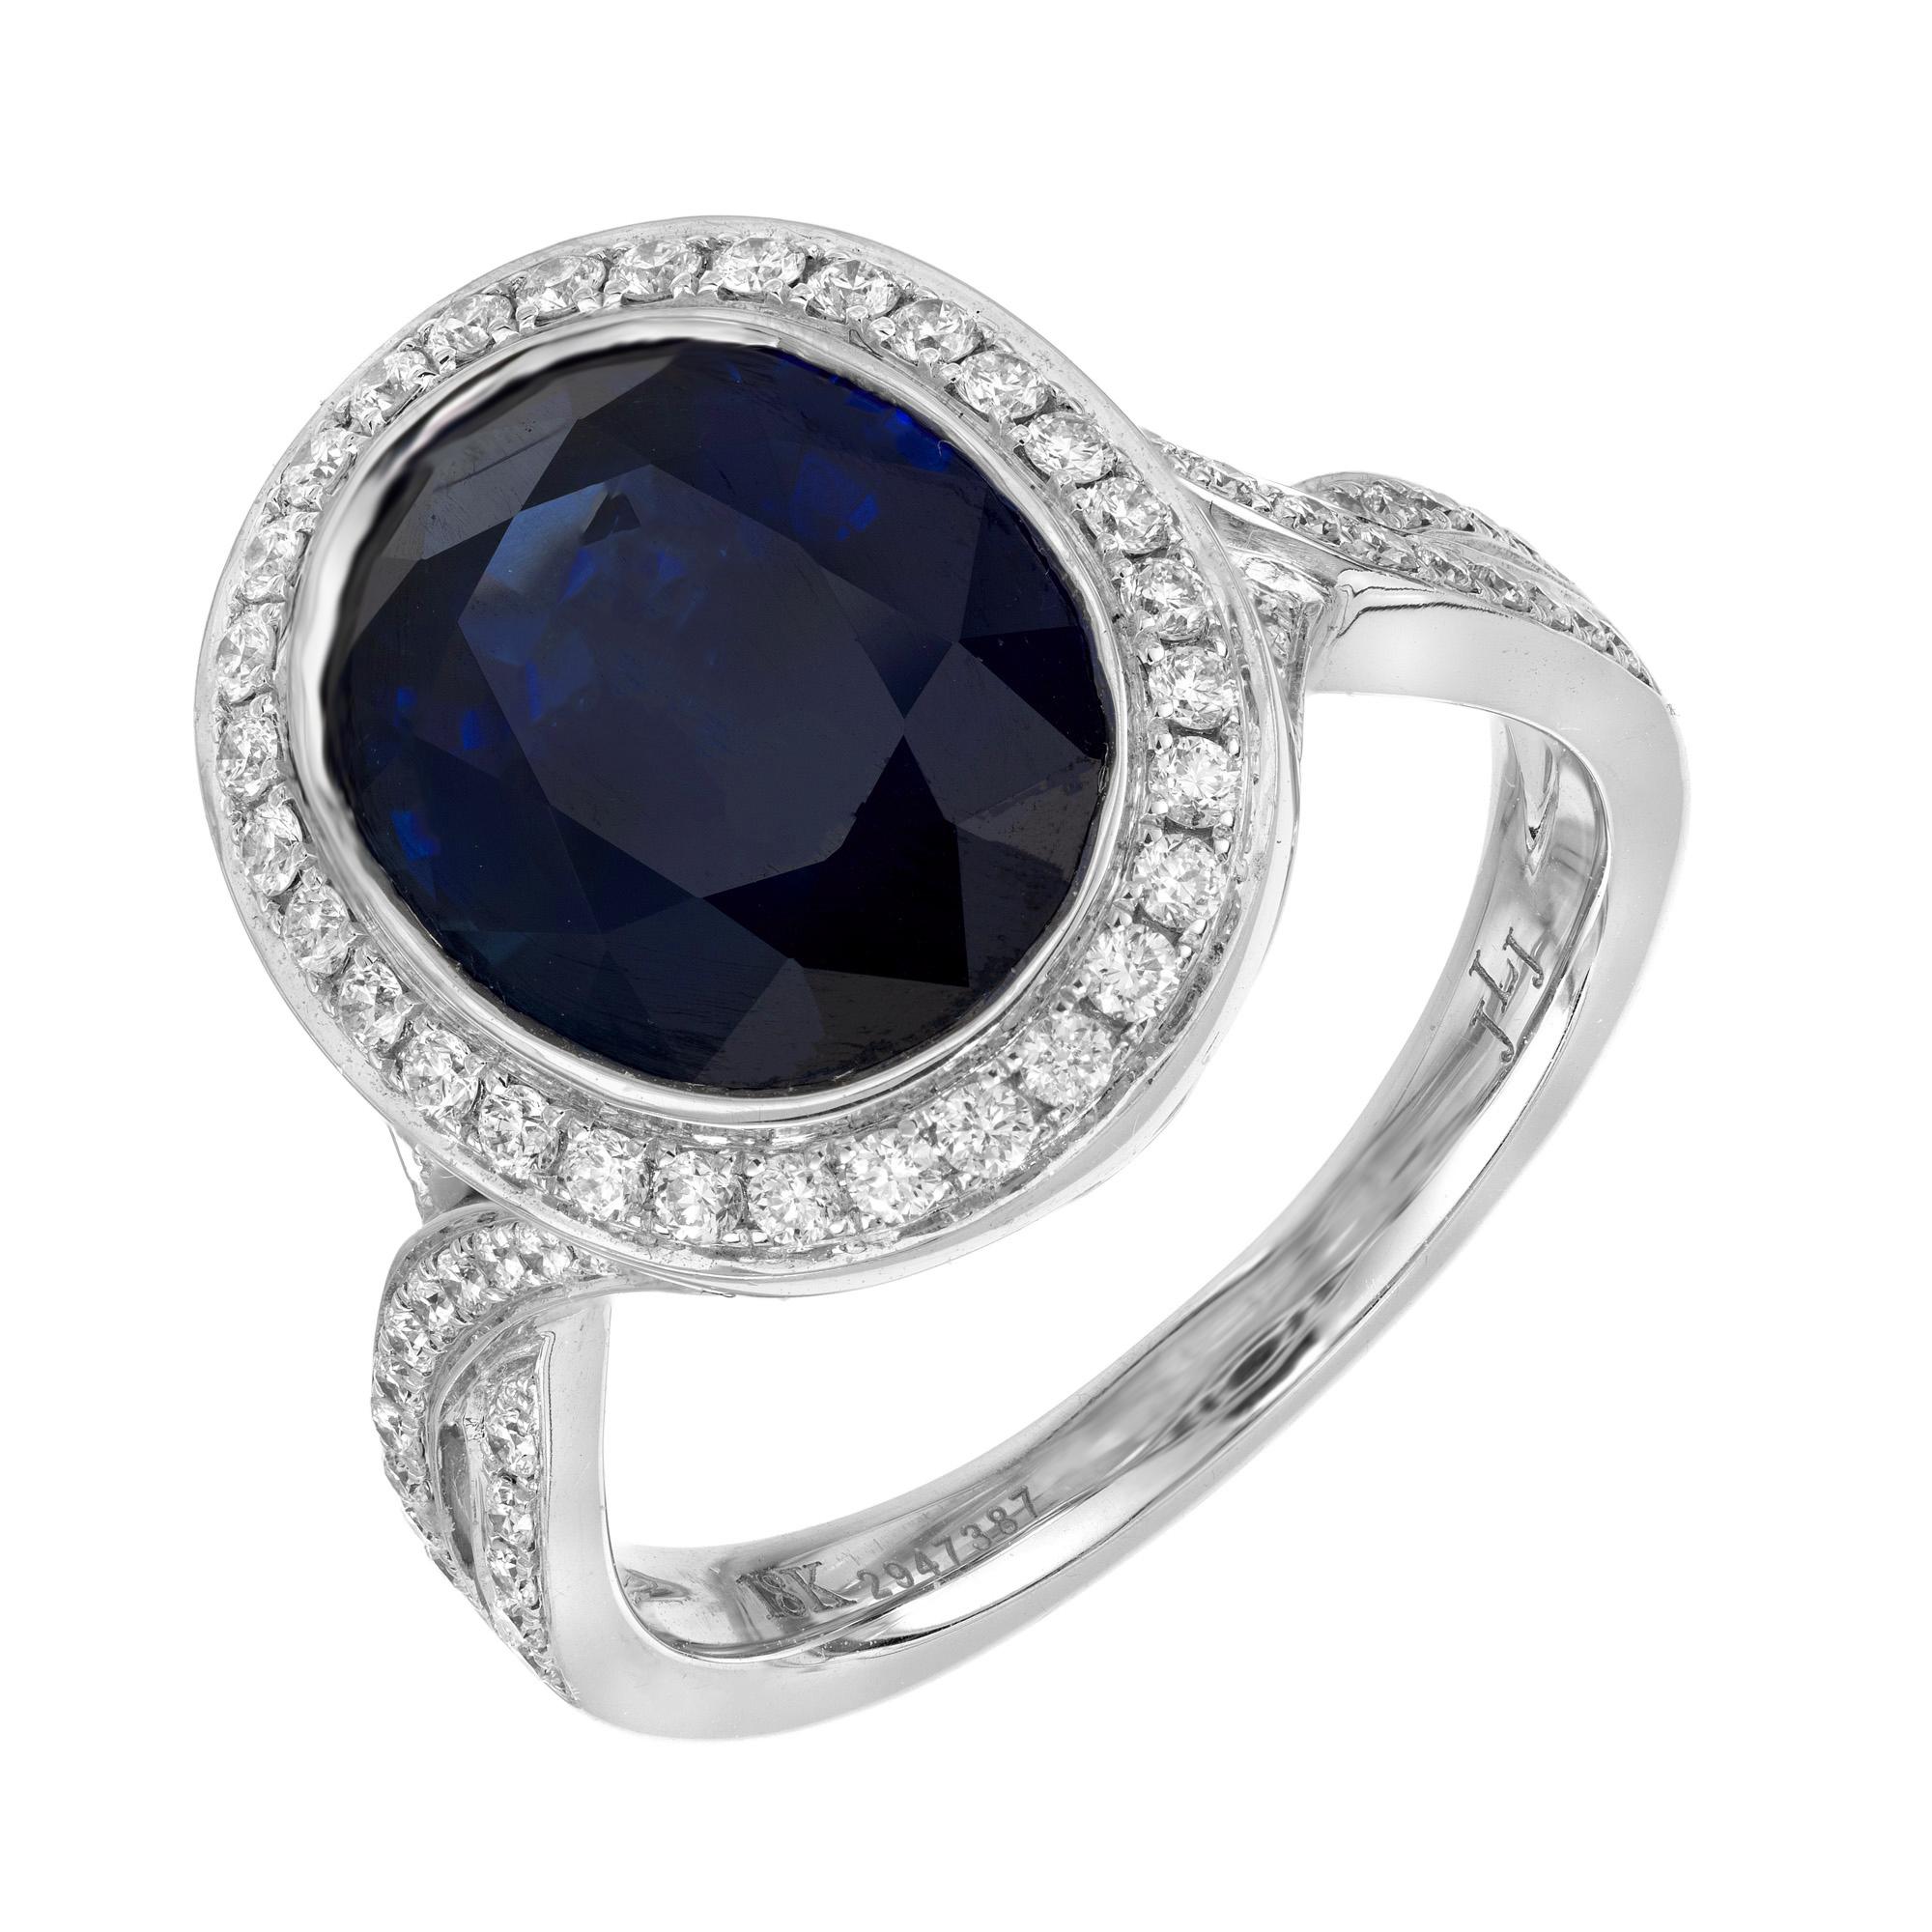 Superbe bague de fiançailles en saphir ovale naturel d'un bleu profond et diamant. Au centre de cette monture se trouve un saphir ovale d'un bleu profond, monté et serti sur lunette en or blanc 18 carats. Le saphir est rehaussé d'un halo de diamants